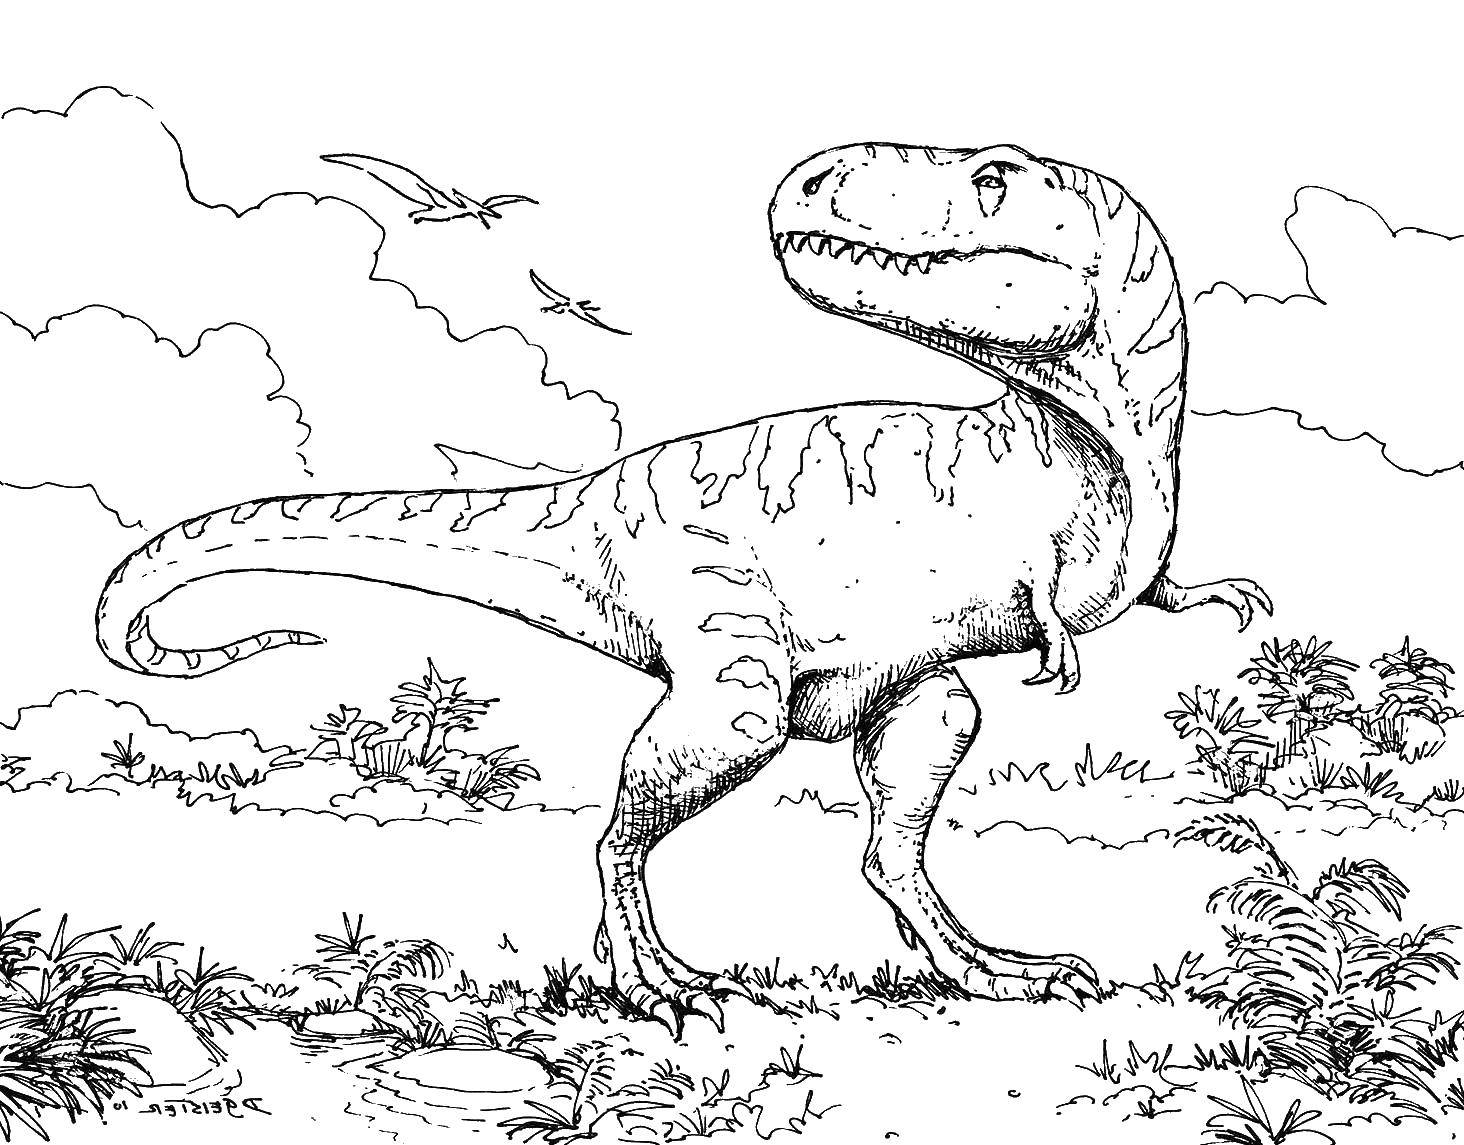 Опис: розмальовки  Тиранозавр був одним одним з найбільших сухопутних хижих. Категорія: динозавр. Теги:  Тиранозавр, динозавр.